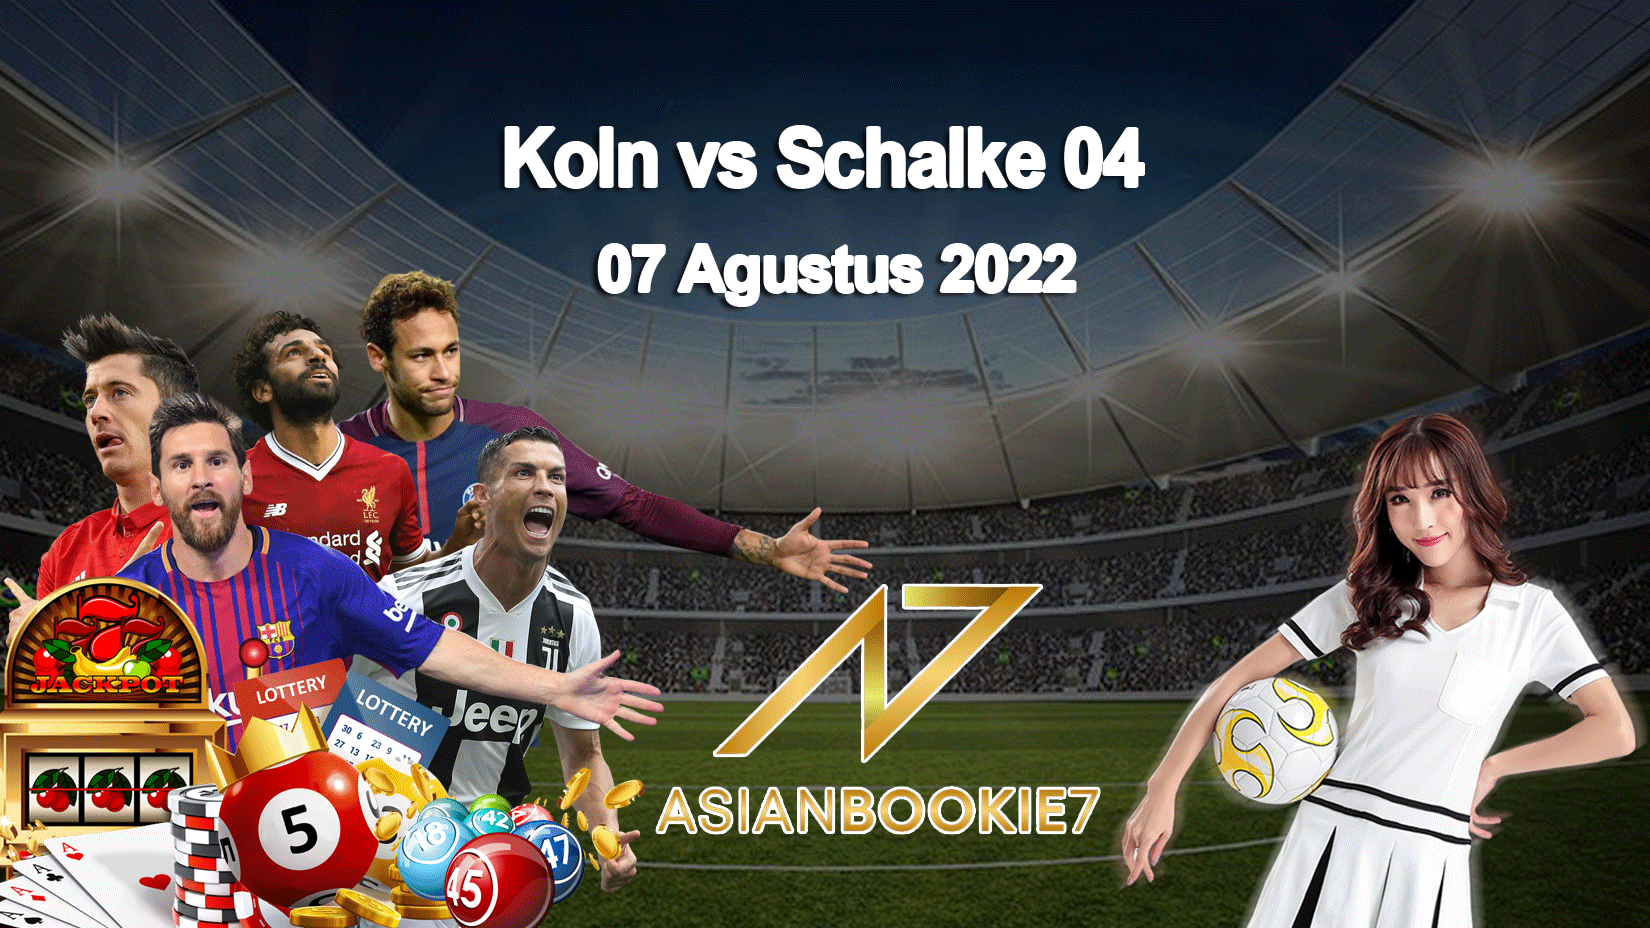 Prediksi Koln vs Schalke 04 07 Agustus 2022